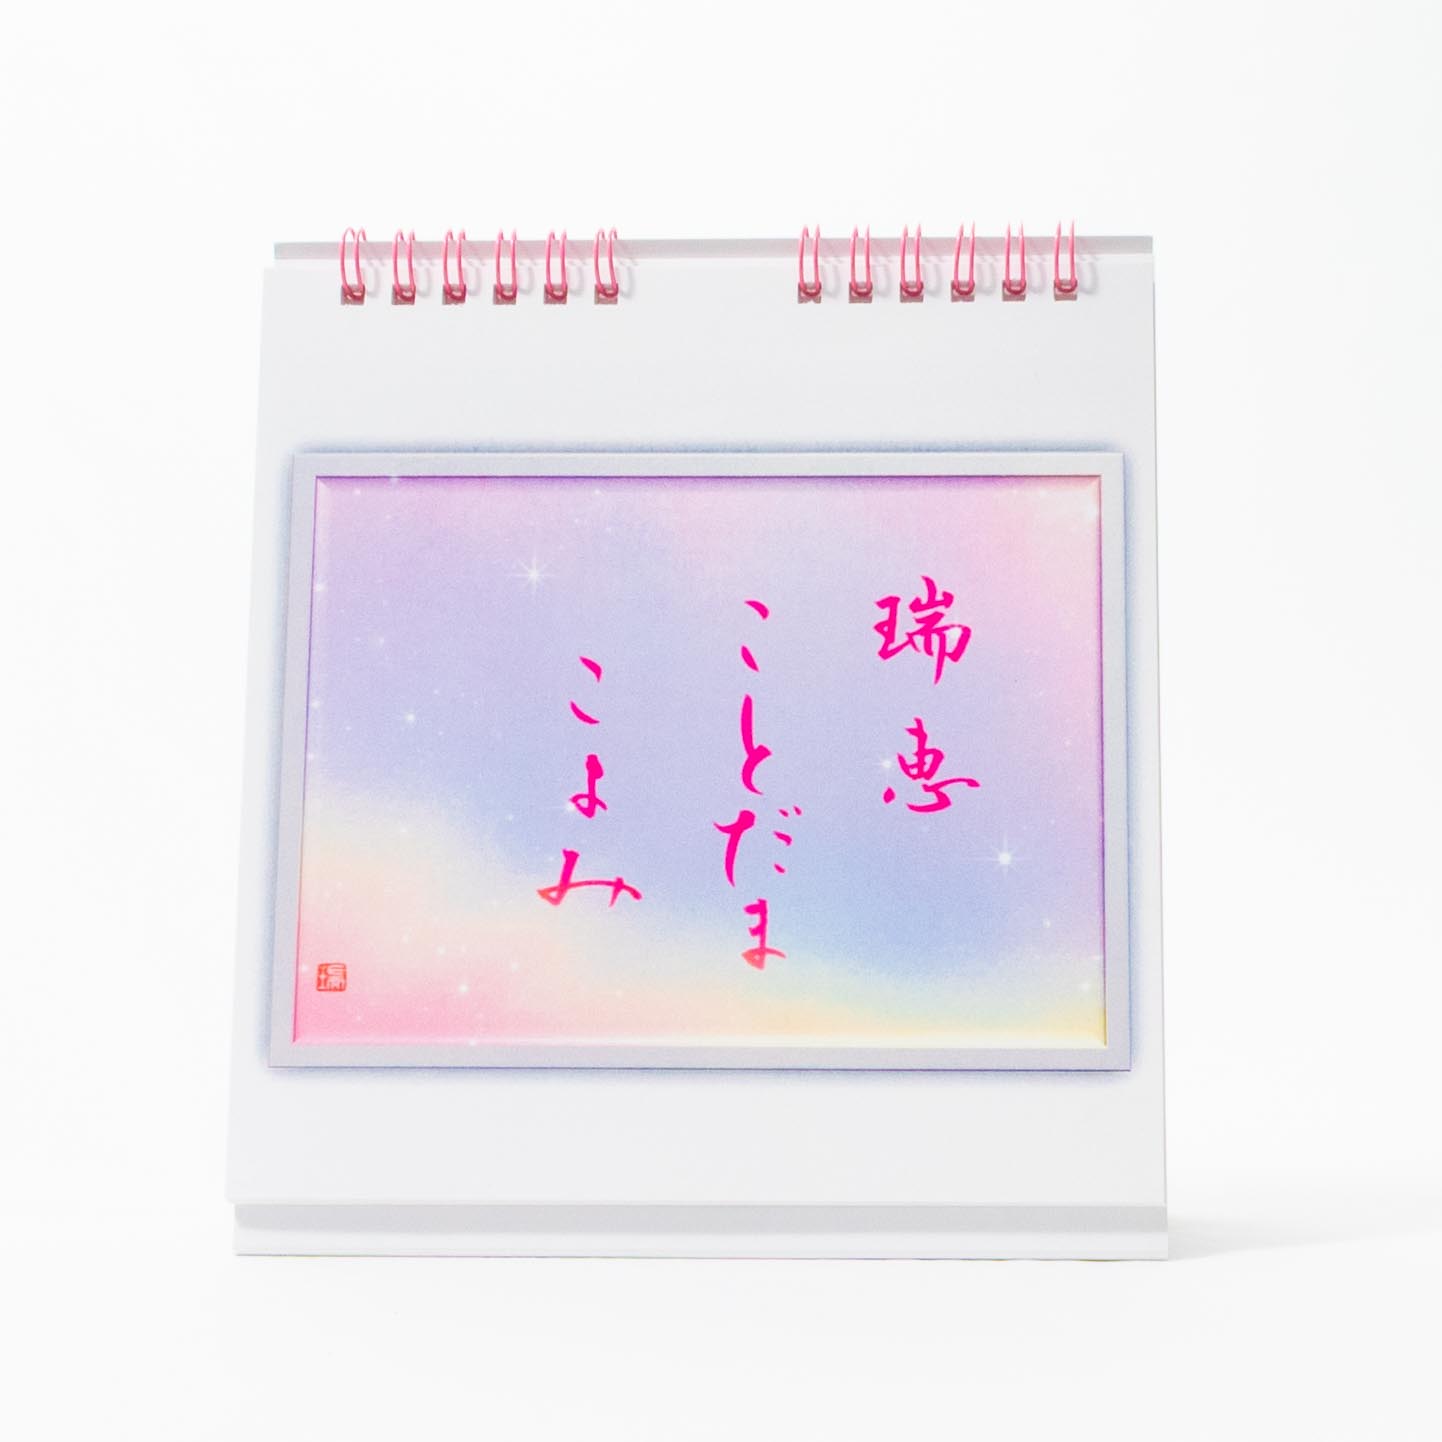 「松田　瑞恵 様」製作のオリジナルカレンダー